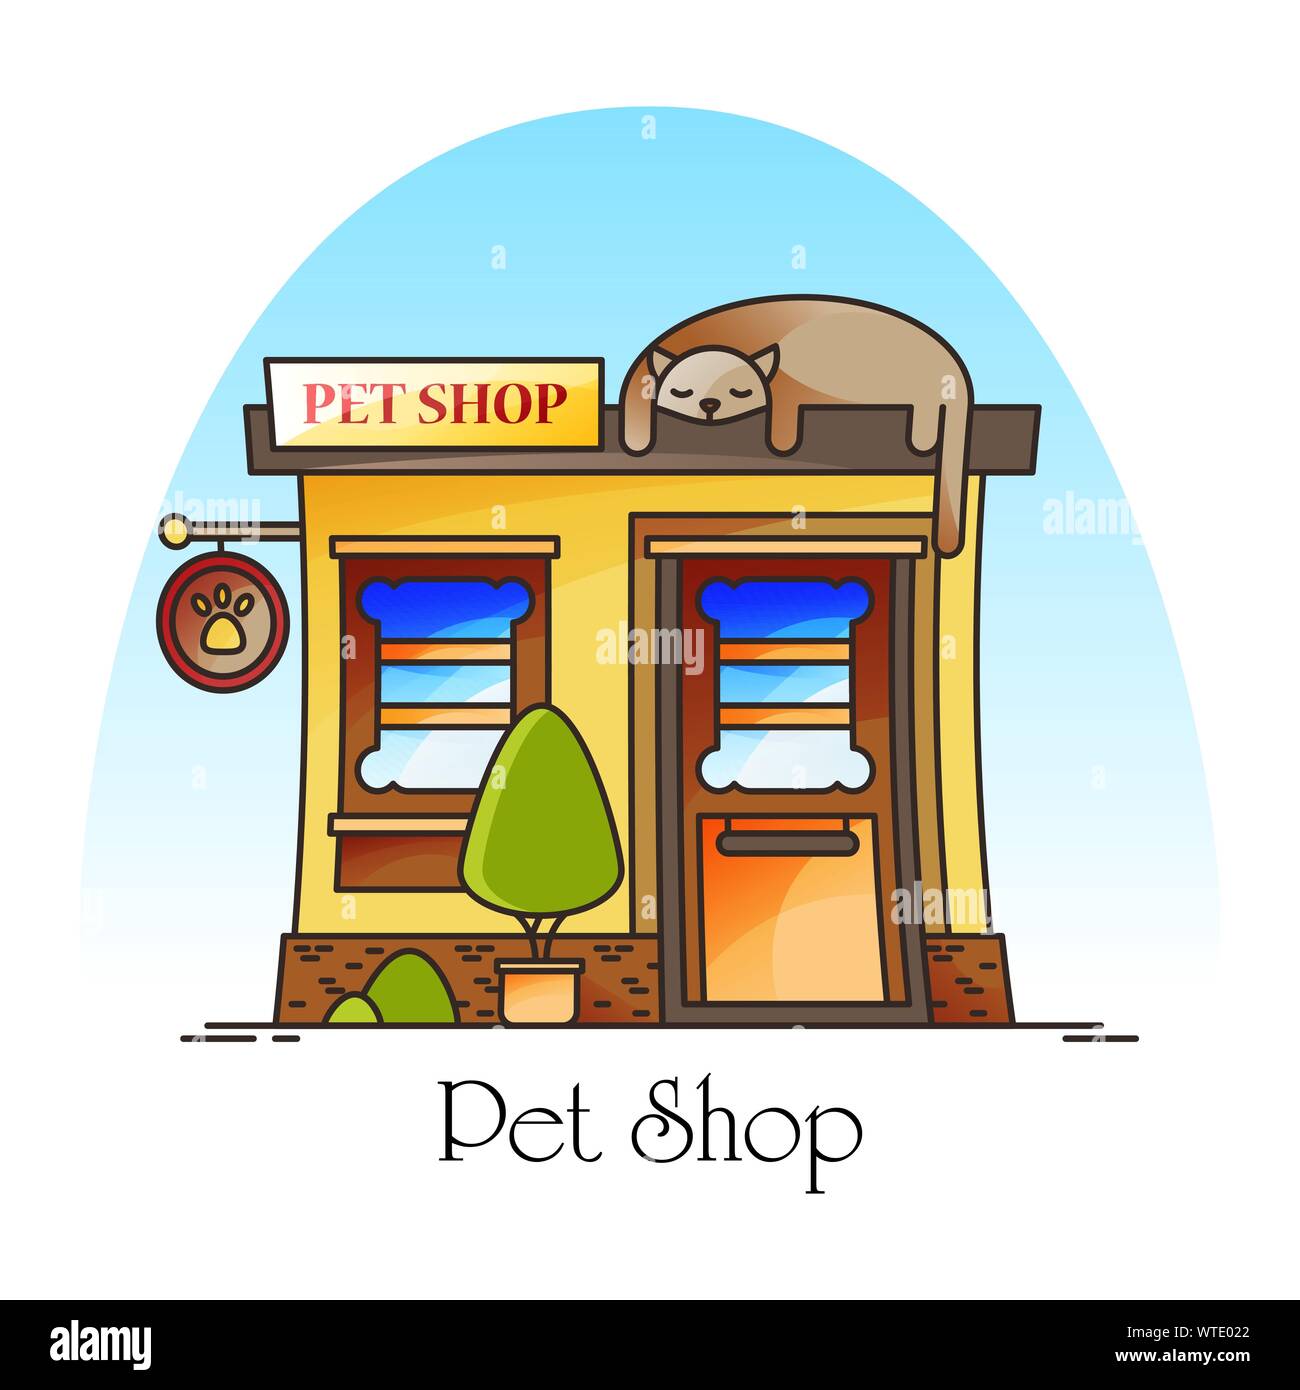 Pet shop or animal store. Building facade Stock Vector